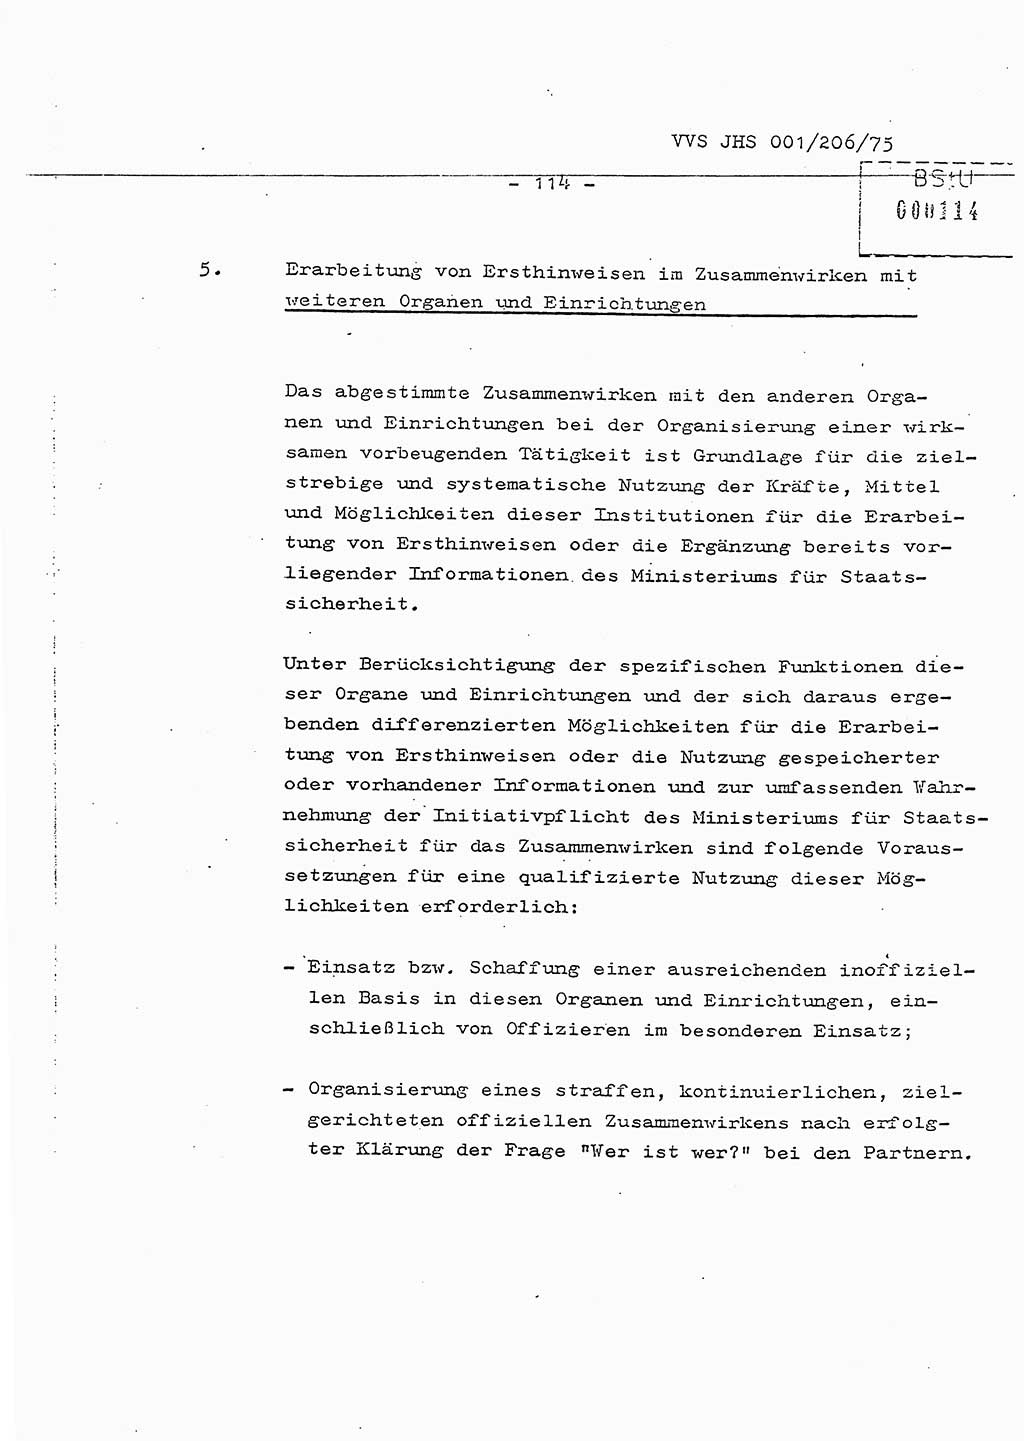 Dissertation Generalmajor Manfred Hummitzsch (Leiter der BV Leipzig), Generalmajor Heinz Fiedler (HA Ⅵ), Oberst Rolf Fister (HA Ⅸ), Ministerium für Staatssicherheit (MfS) [Deutsche Demokratische Republik (DDR)], Juristische Hochschule (JHS), Vertrauliche Verschlußsache (VVS) 001-206/75, Potsdam 1975, Seite 114 (Diss. MfS DDR JHS VVS 001-206/75 1975, S. 114)